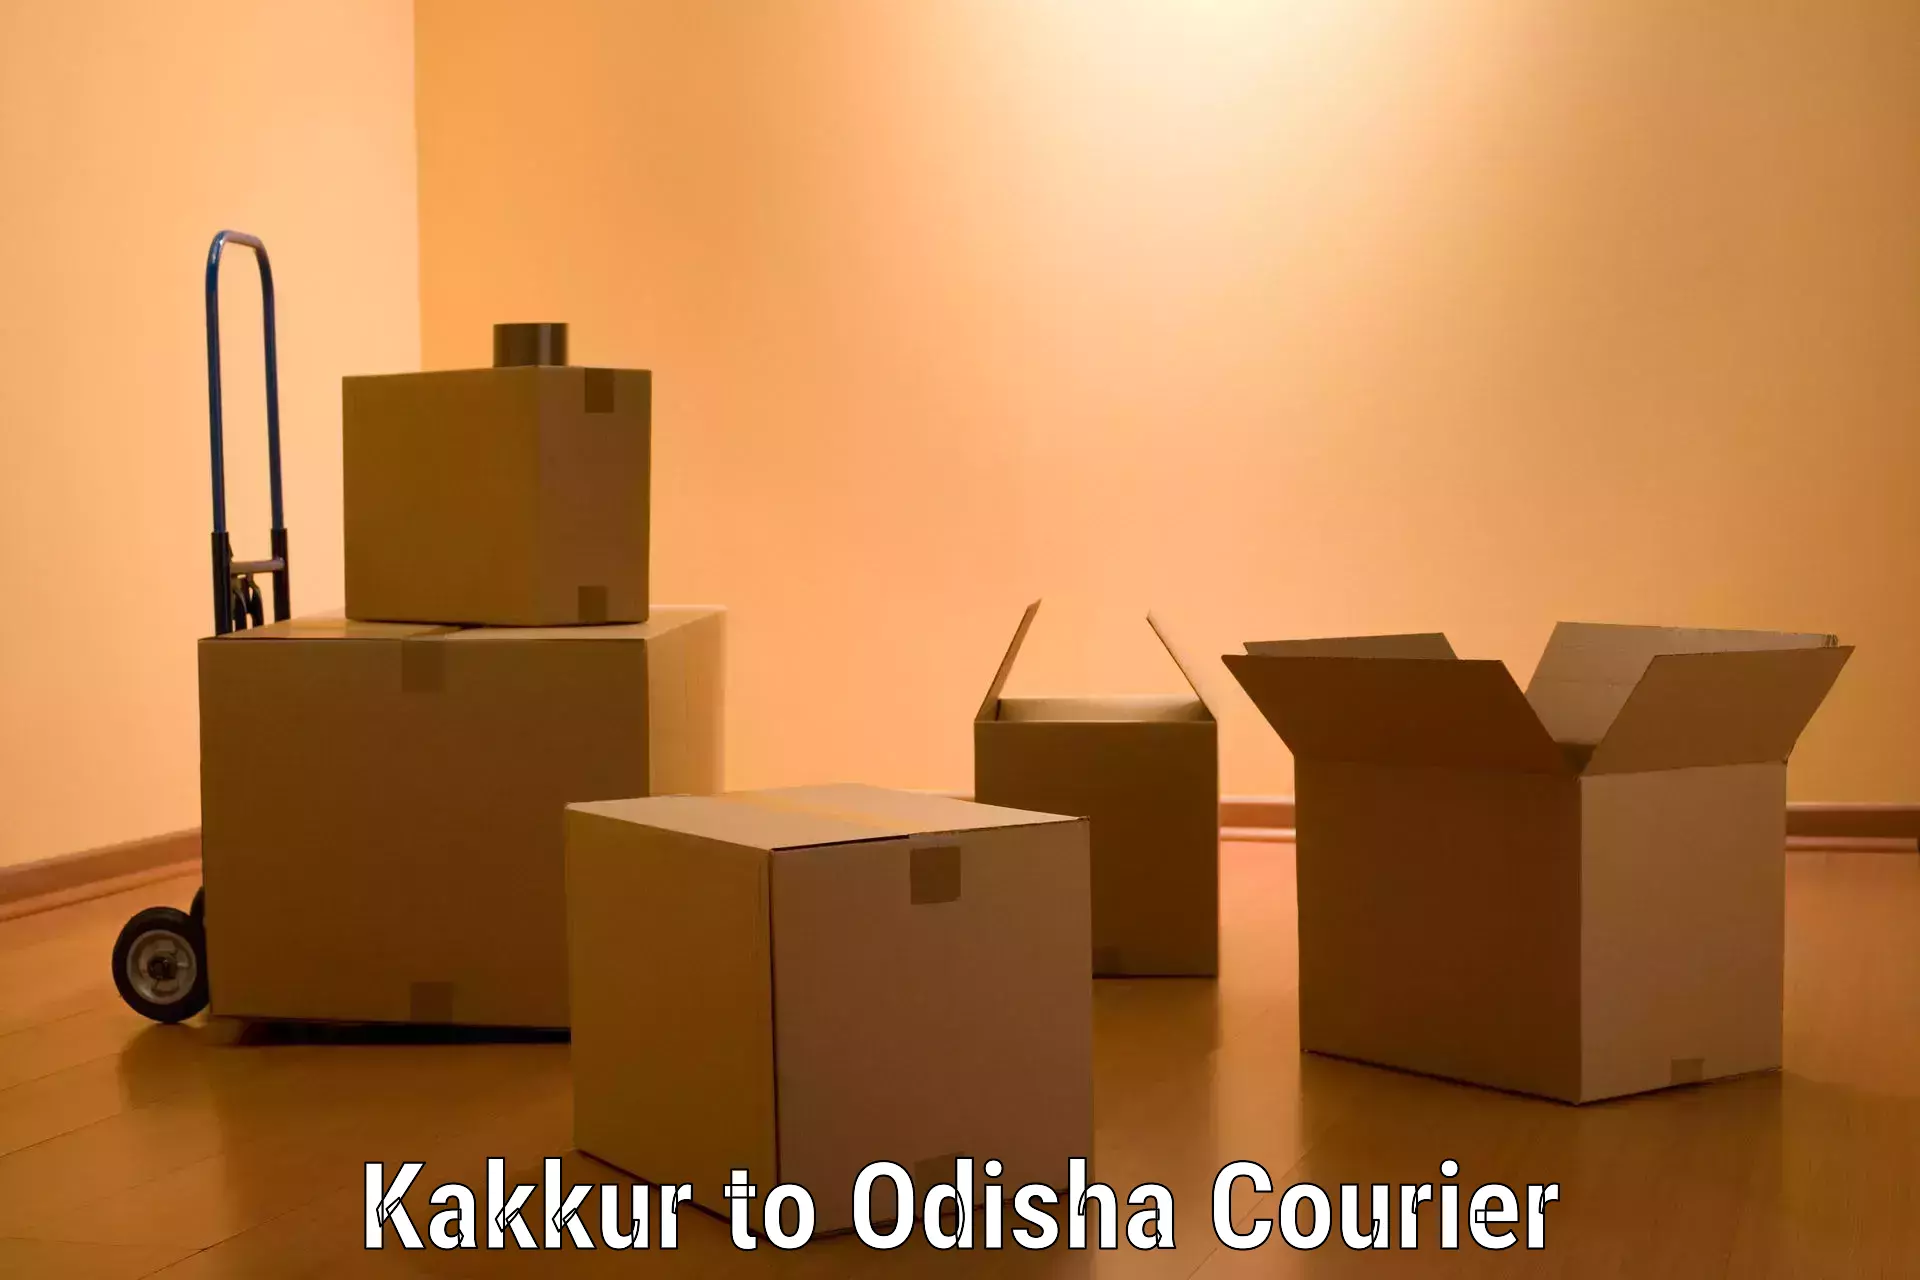 Moving and storage services Kakkur to Telkoi